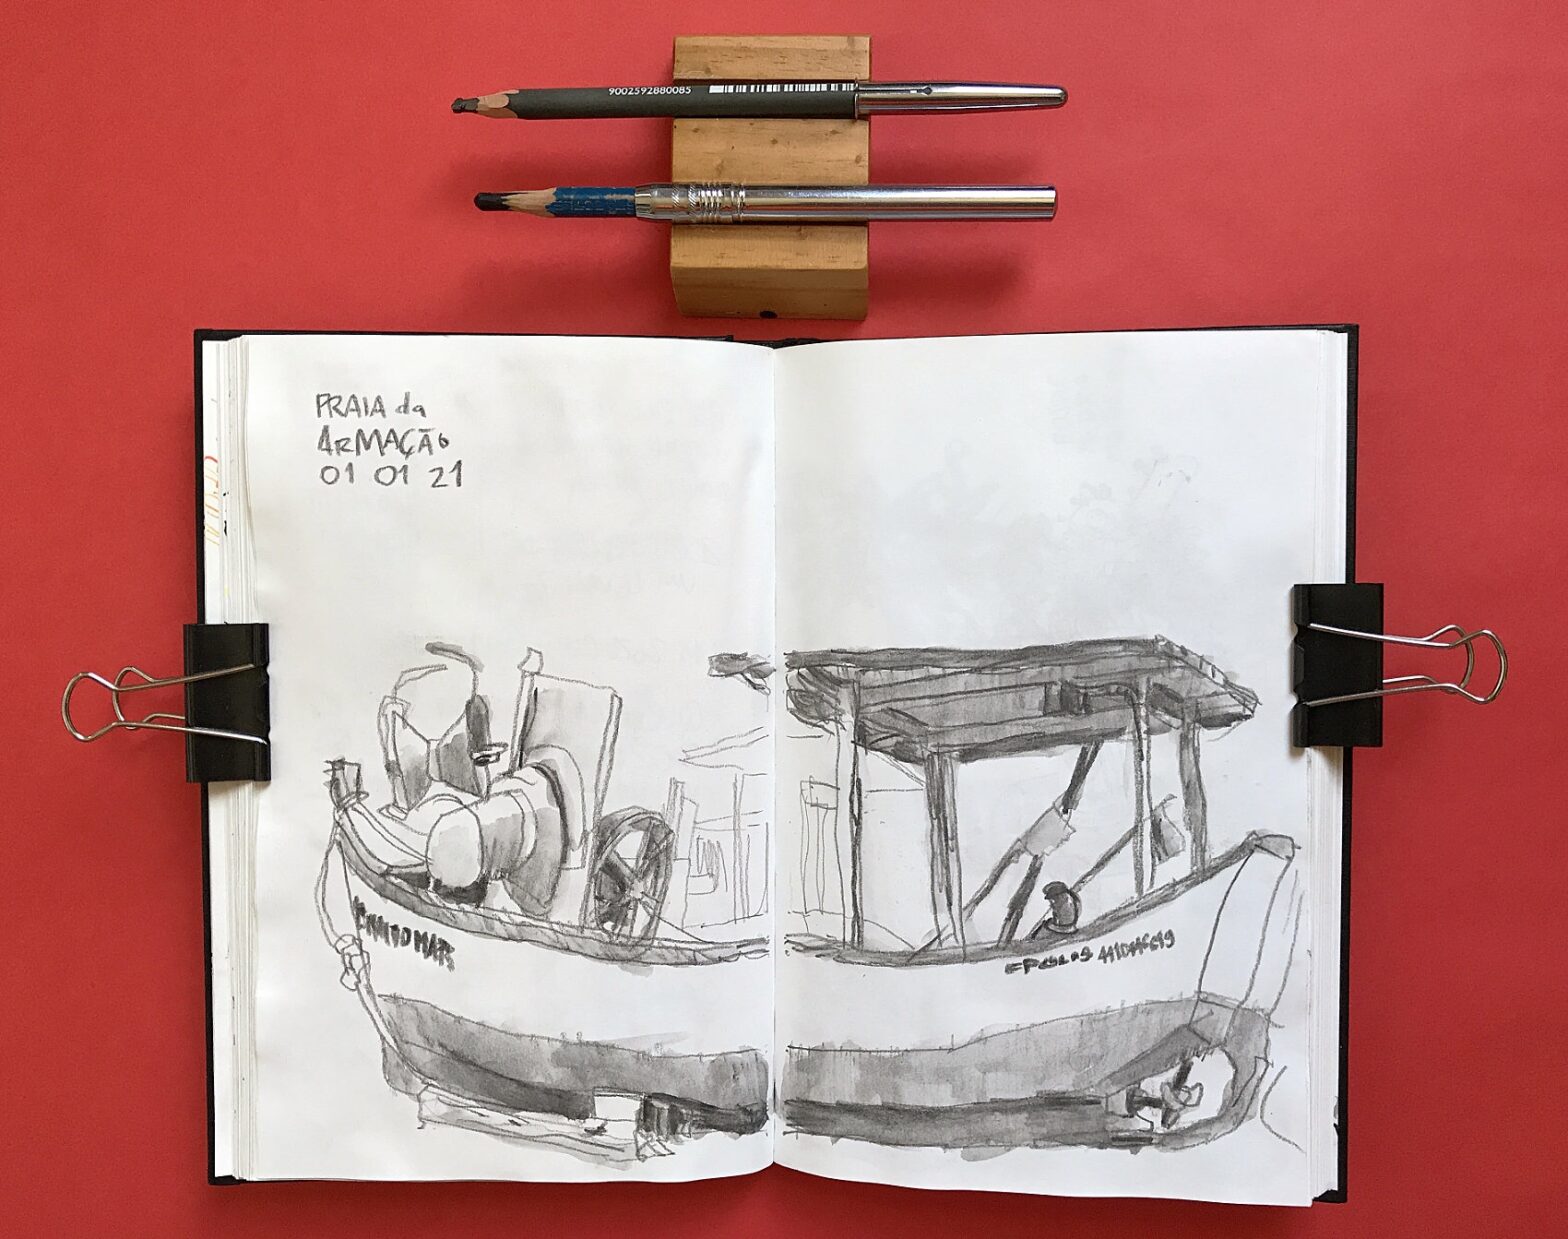 Foto de caderno aberto com desenho em página dupla de um barco de pesca. Acima do caderno, dois lápis.